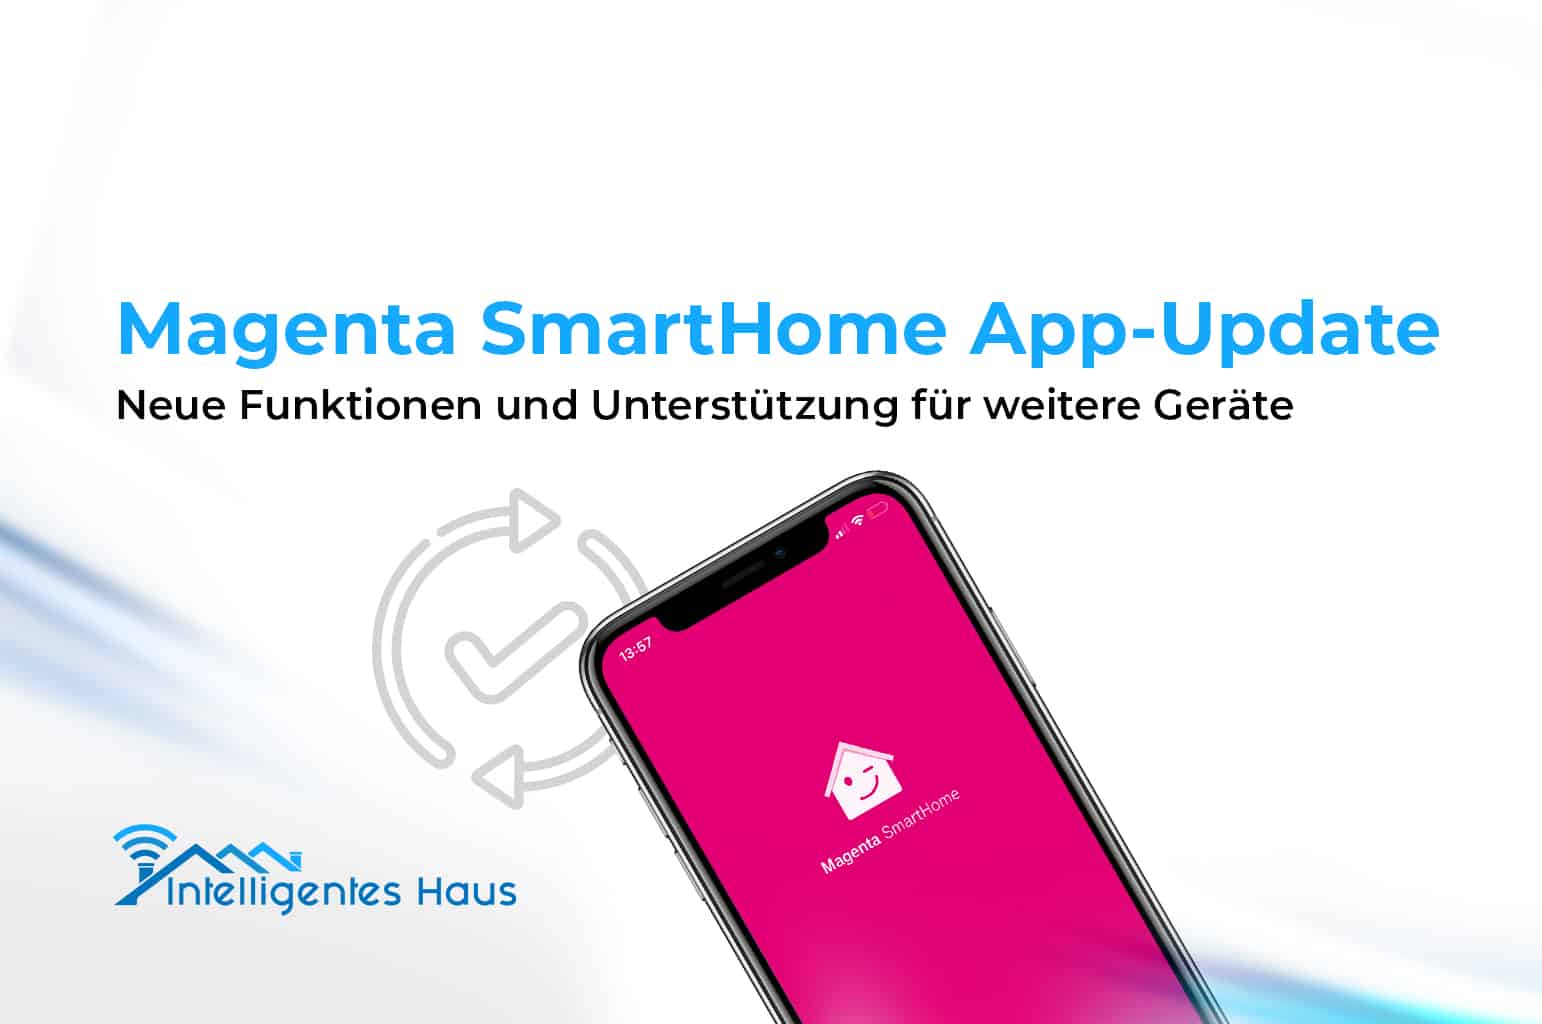 Magenta SmartHome App Update h 228 lt neue Features bereit